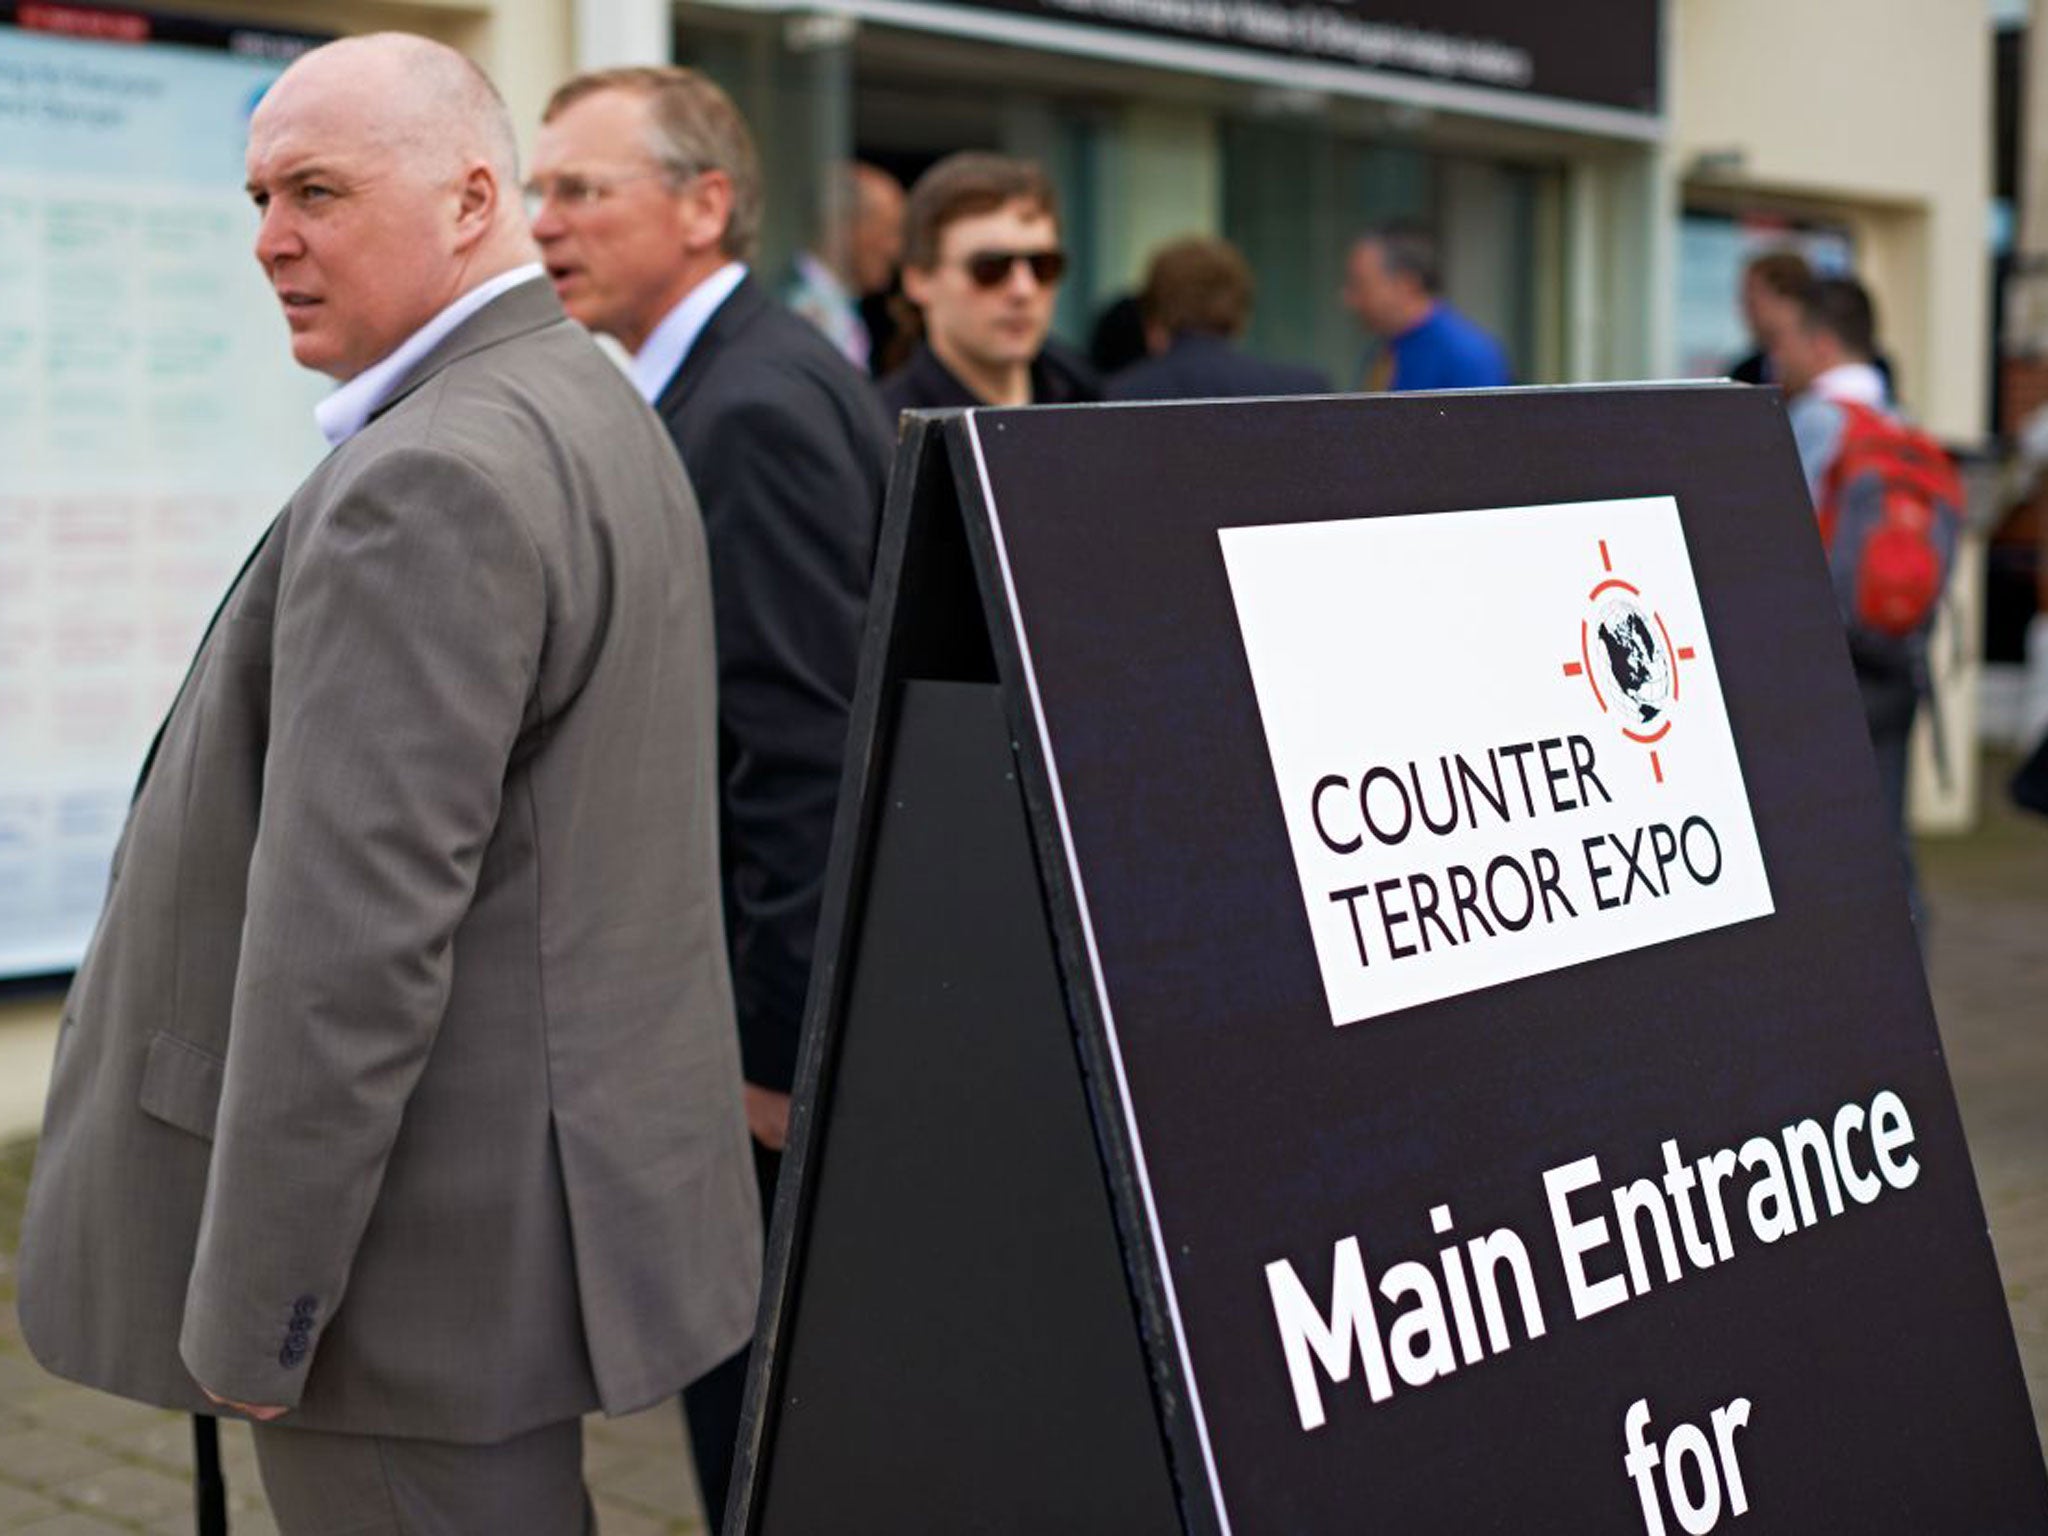 The entrance to London’s Counter Terror Expo